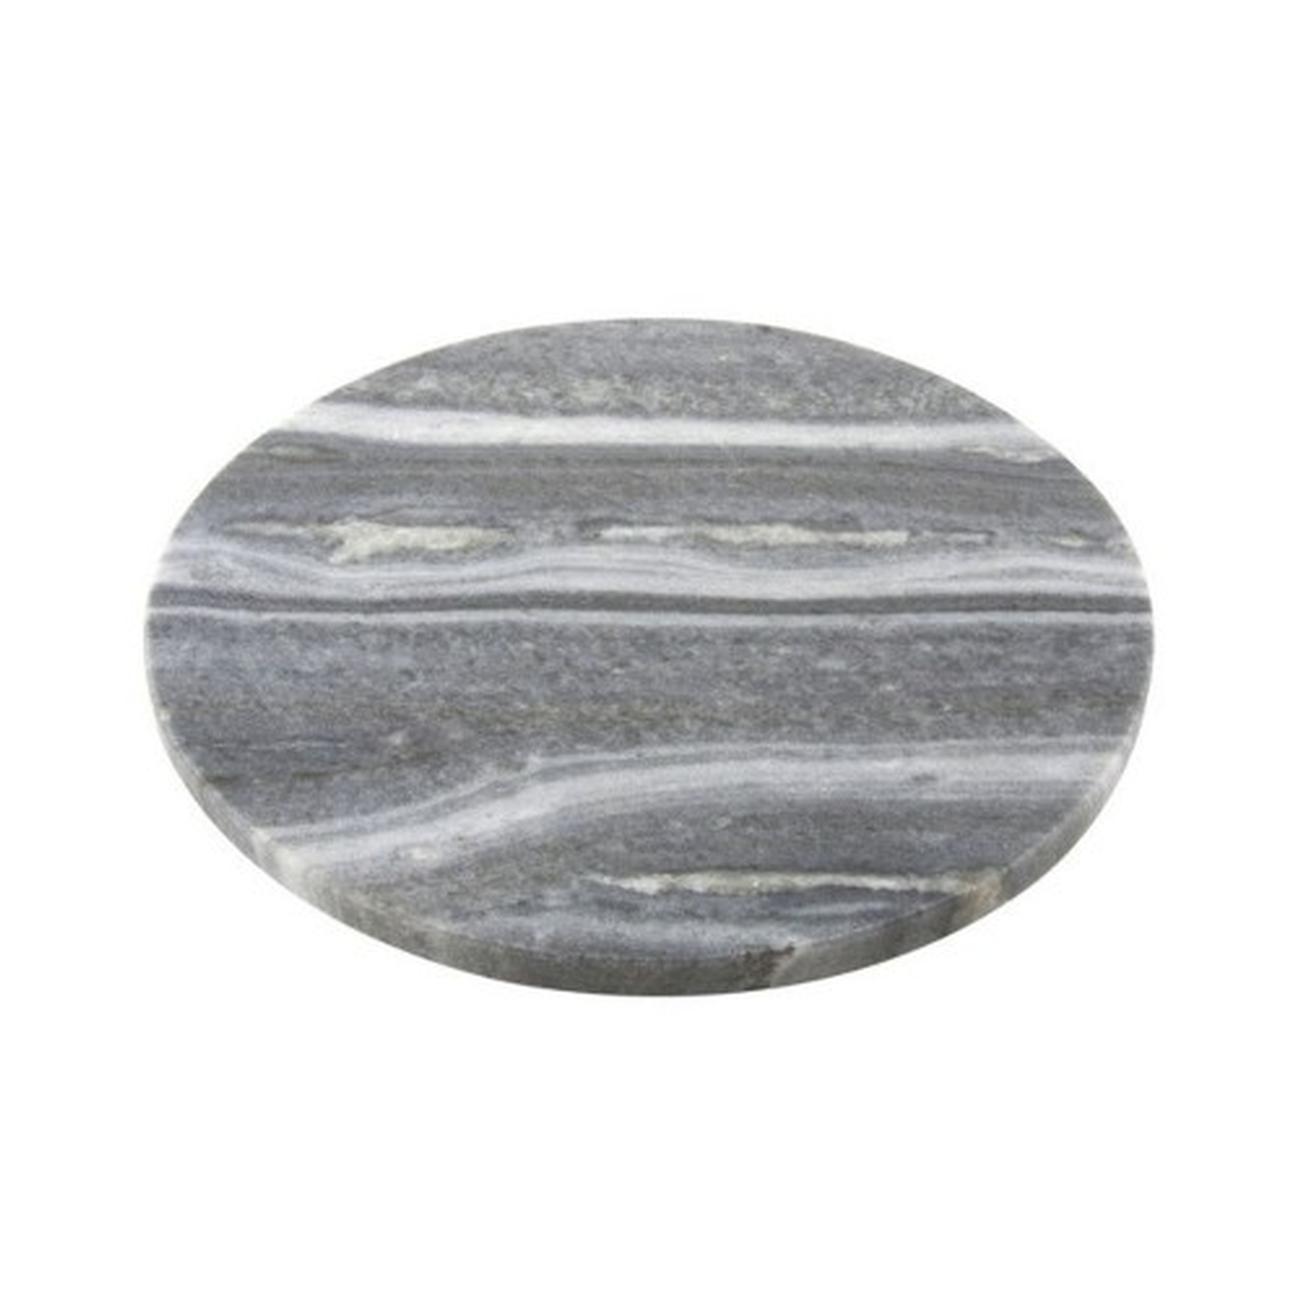 apo-marble-board-black-round-30cm - Apollo Marble Board Black Round 30cm